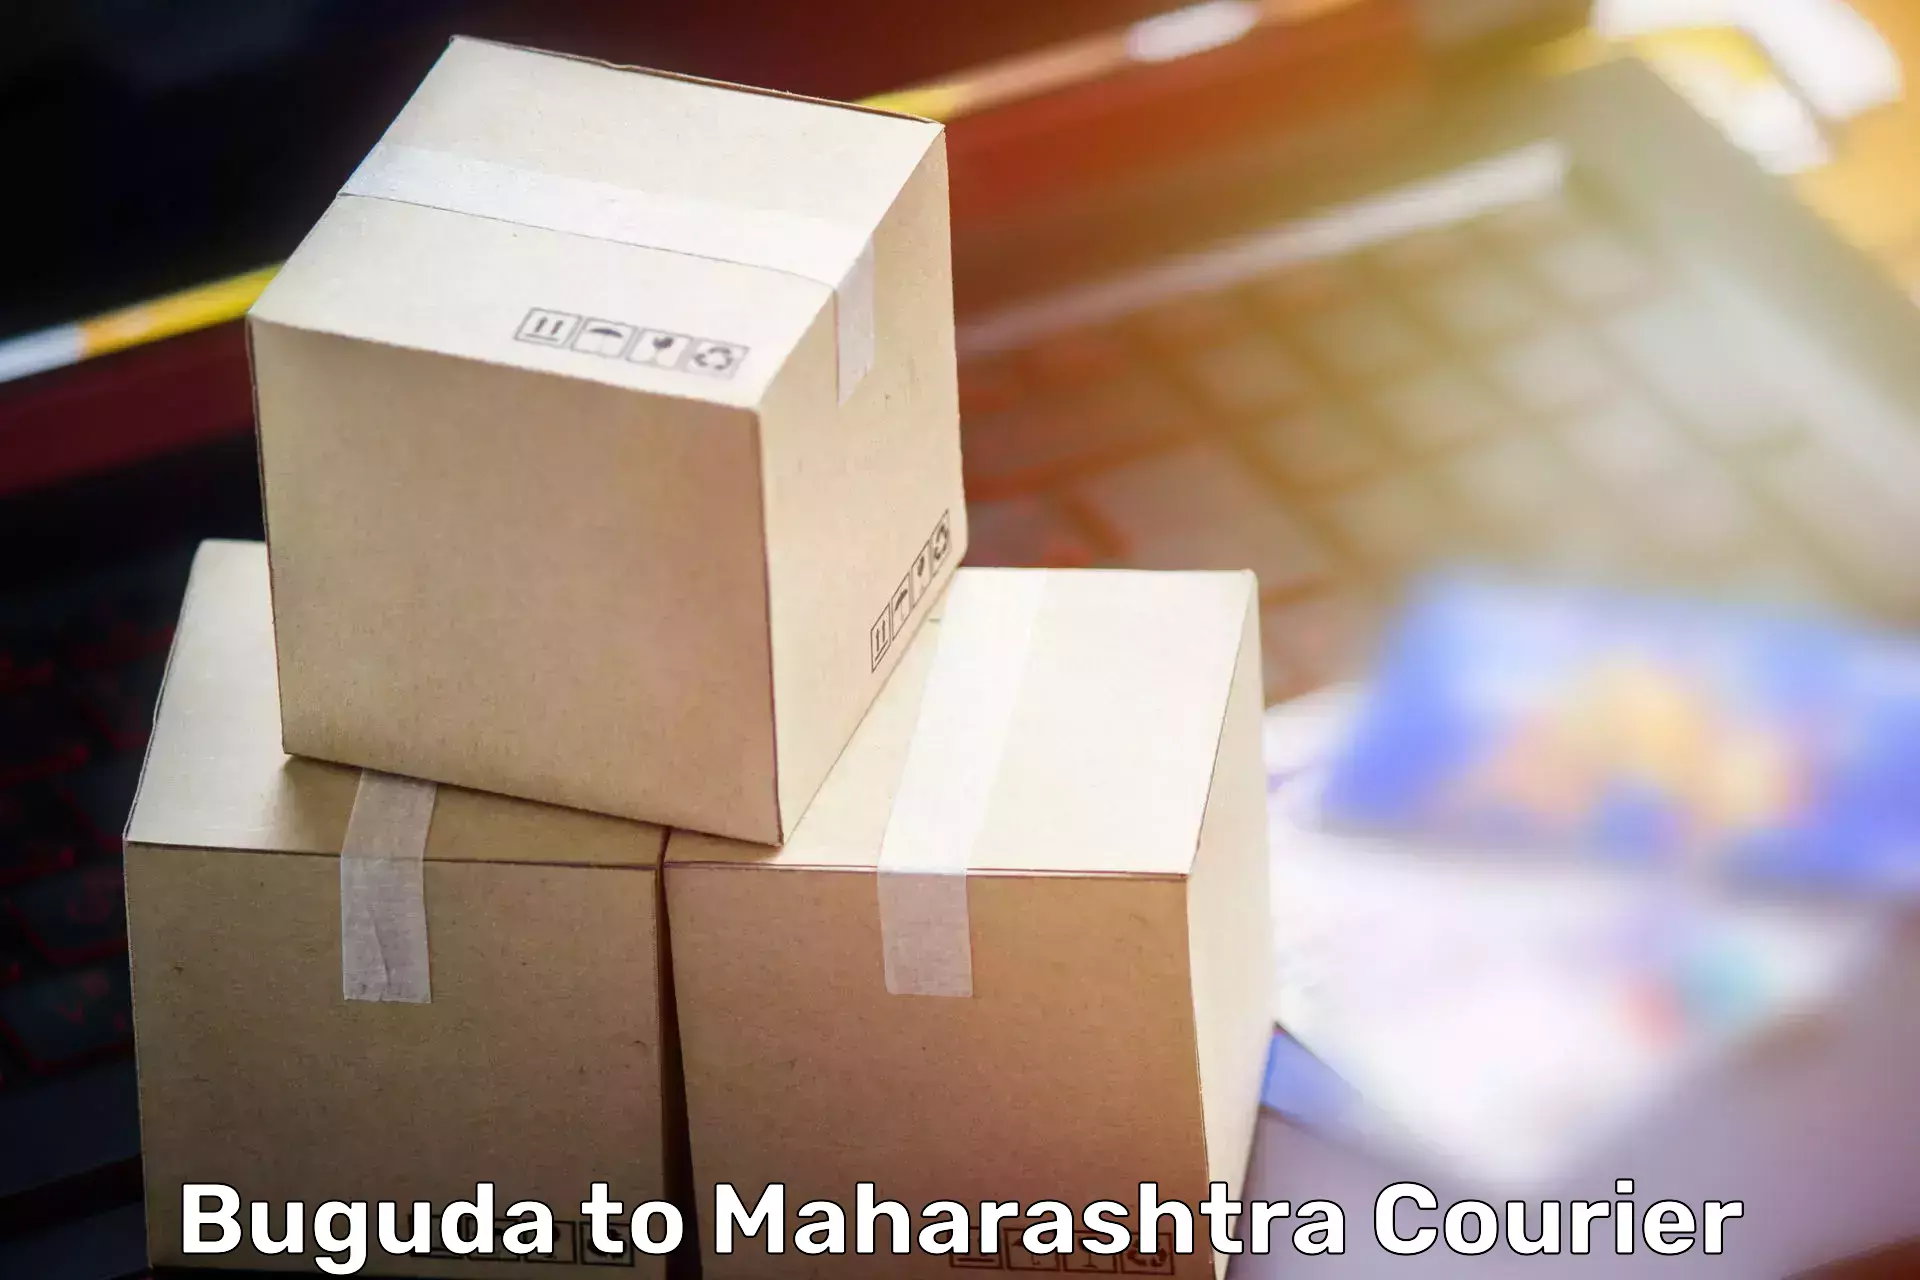 Comprehensive goods transport Buguda to Tata Institute of Social Sciences Mumbai